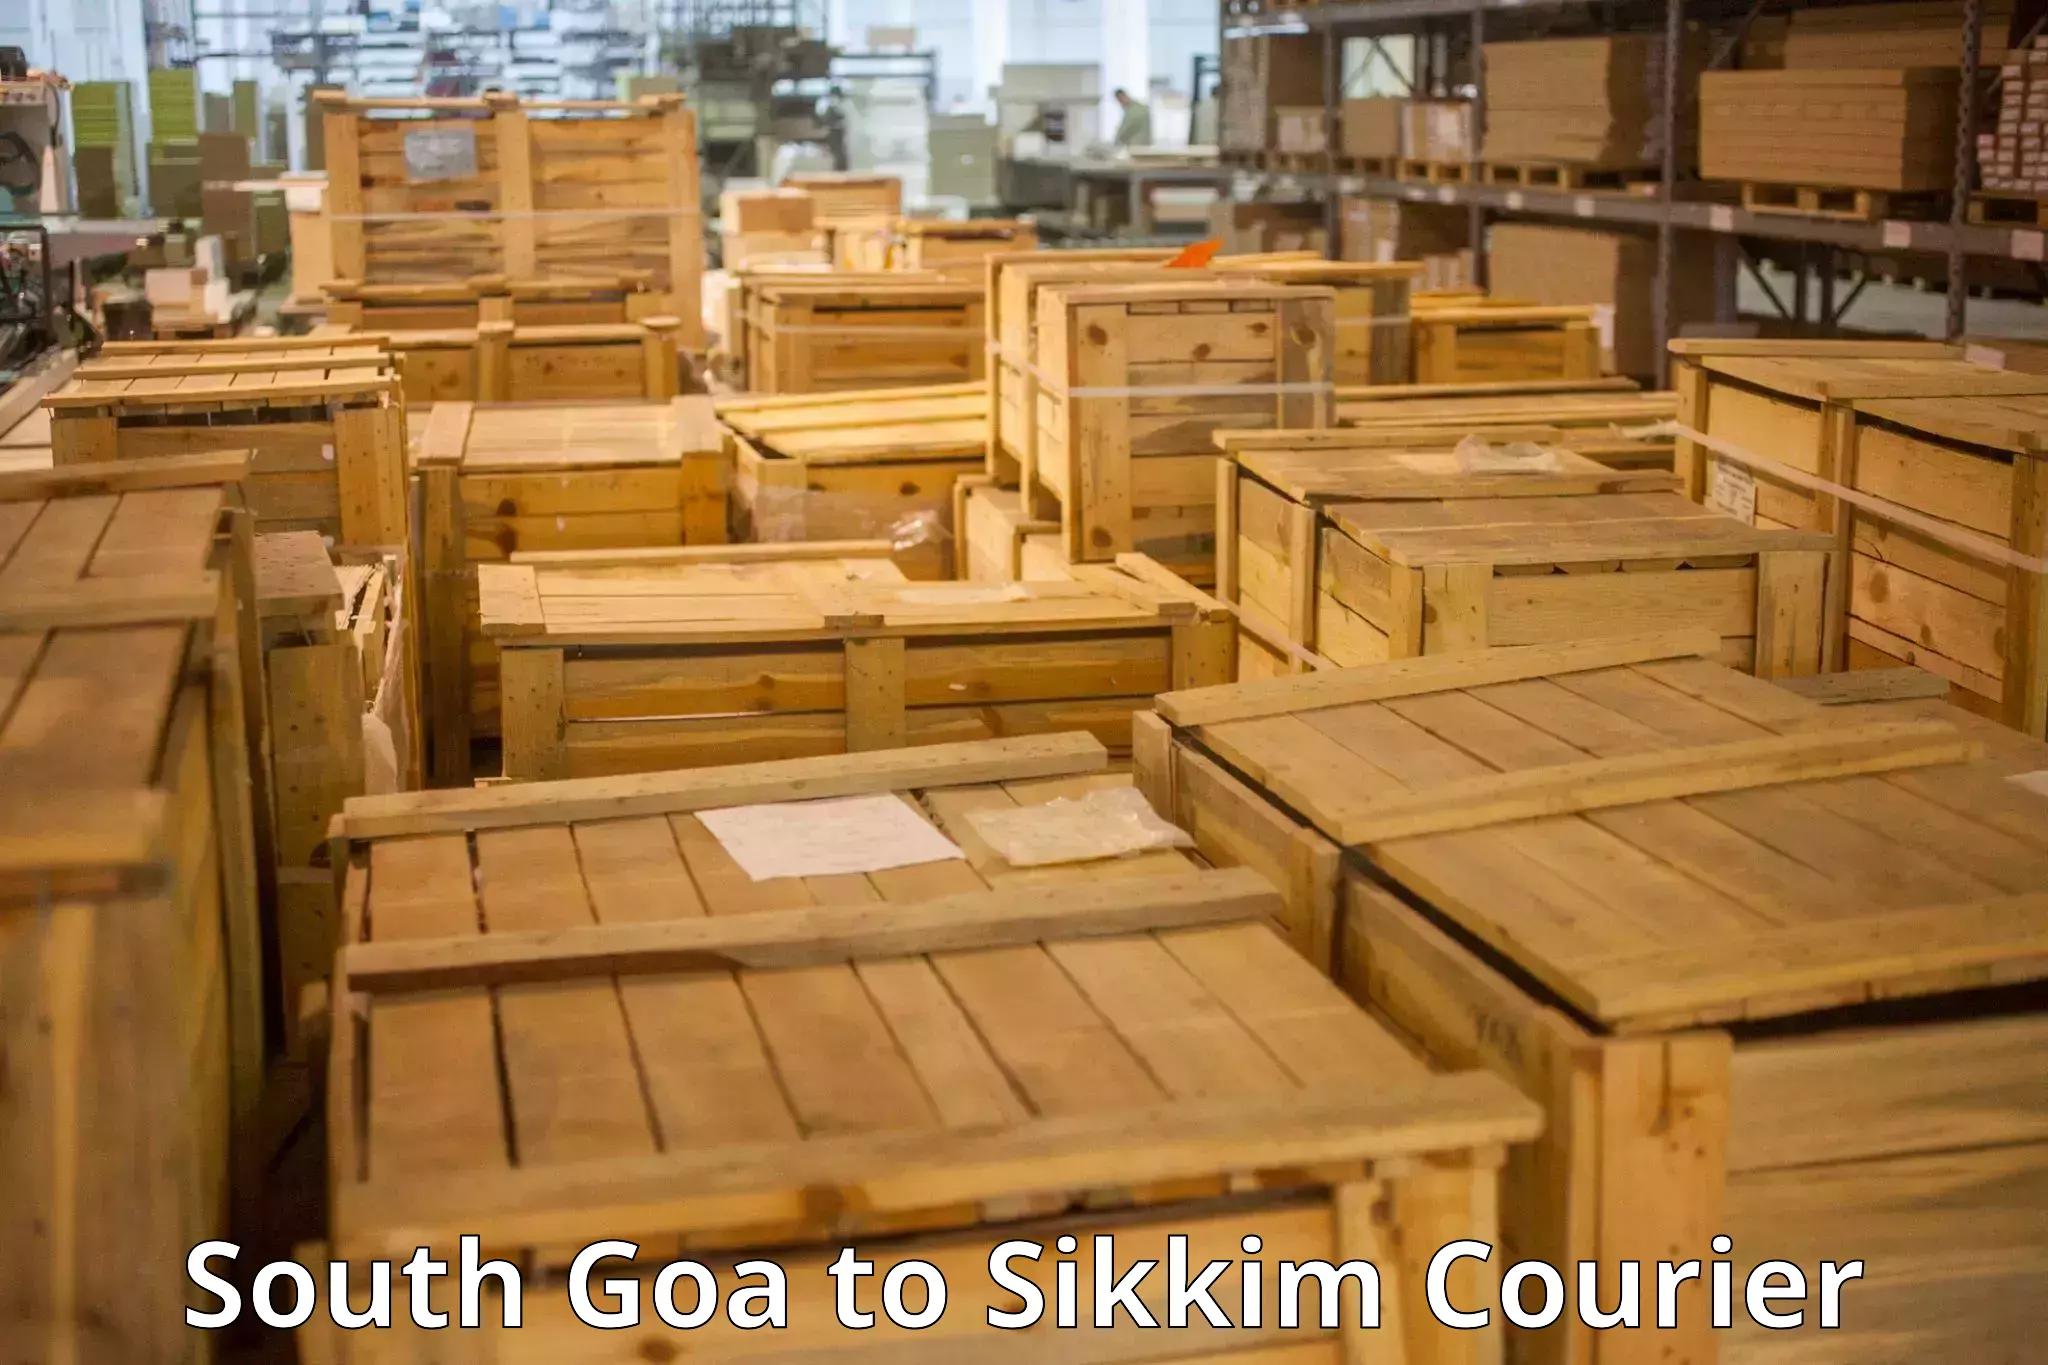 Luggage transport service South Goa to Namchi